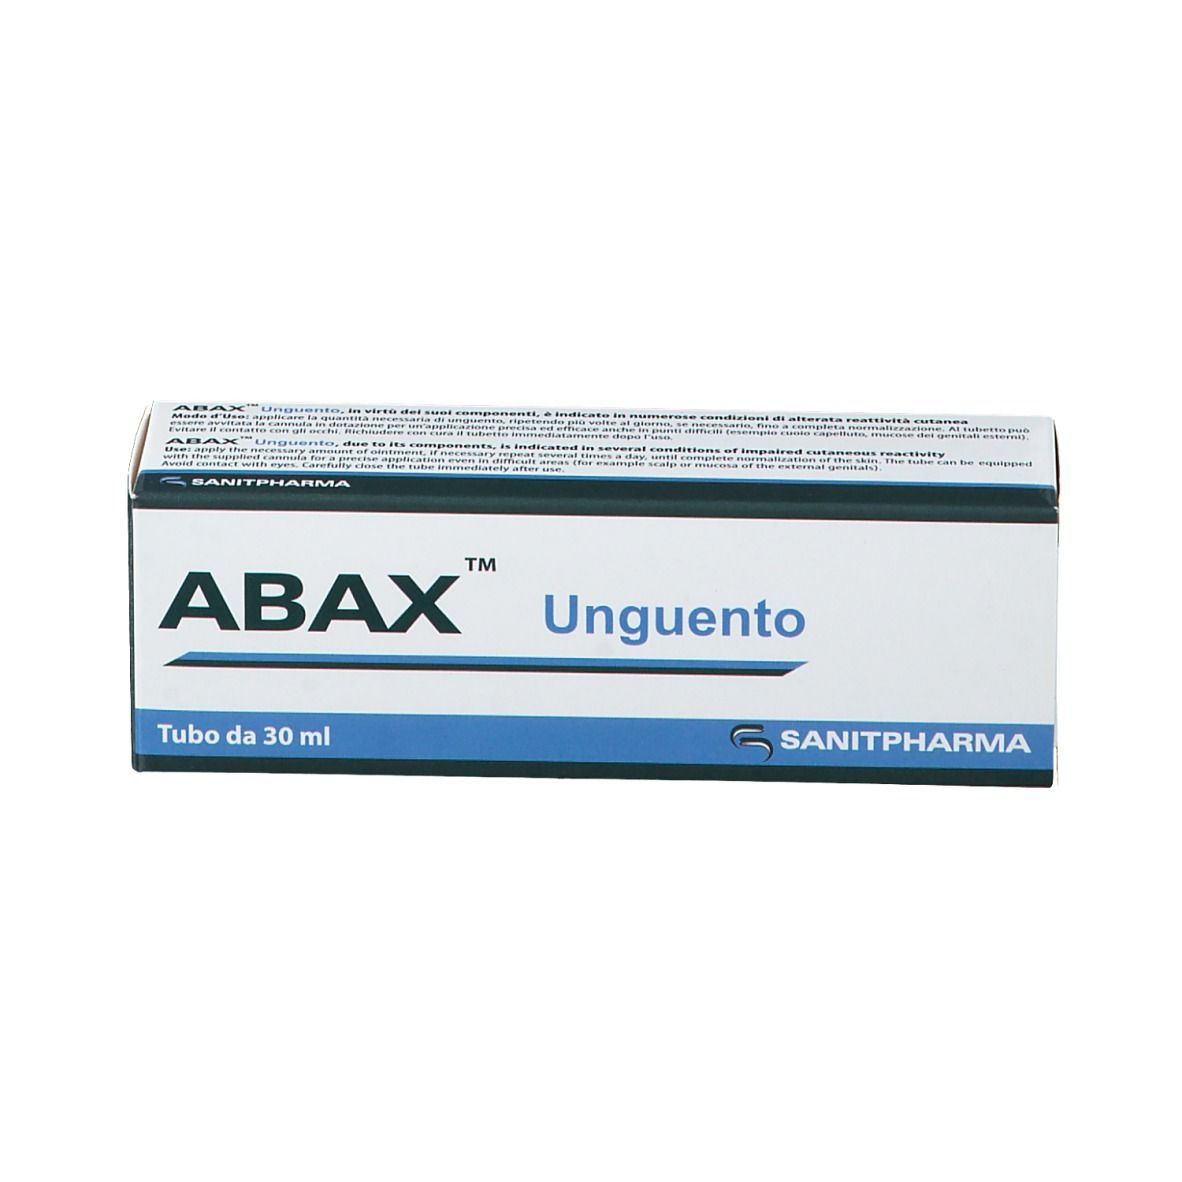 ABAX™ Unguento